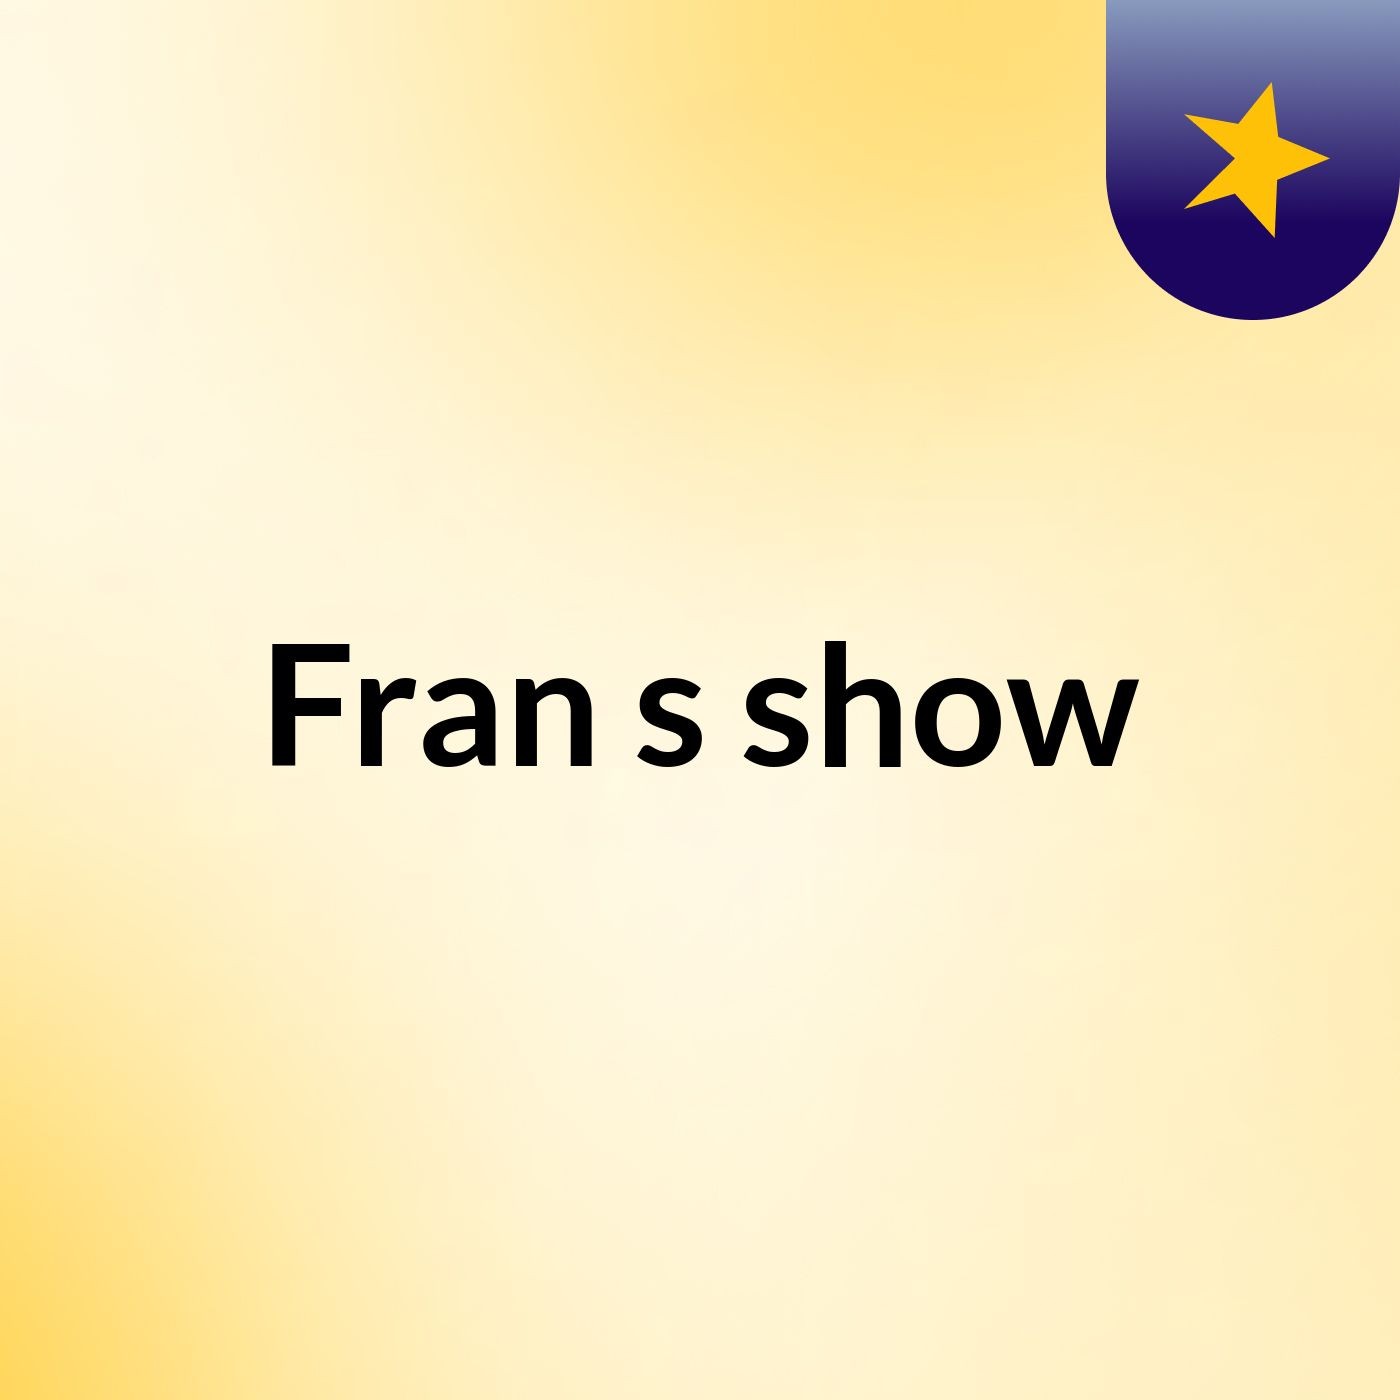 Fran's show